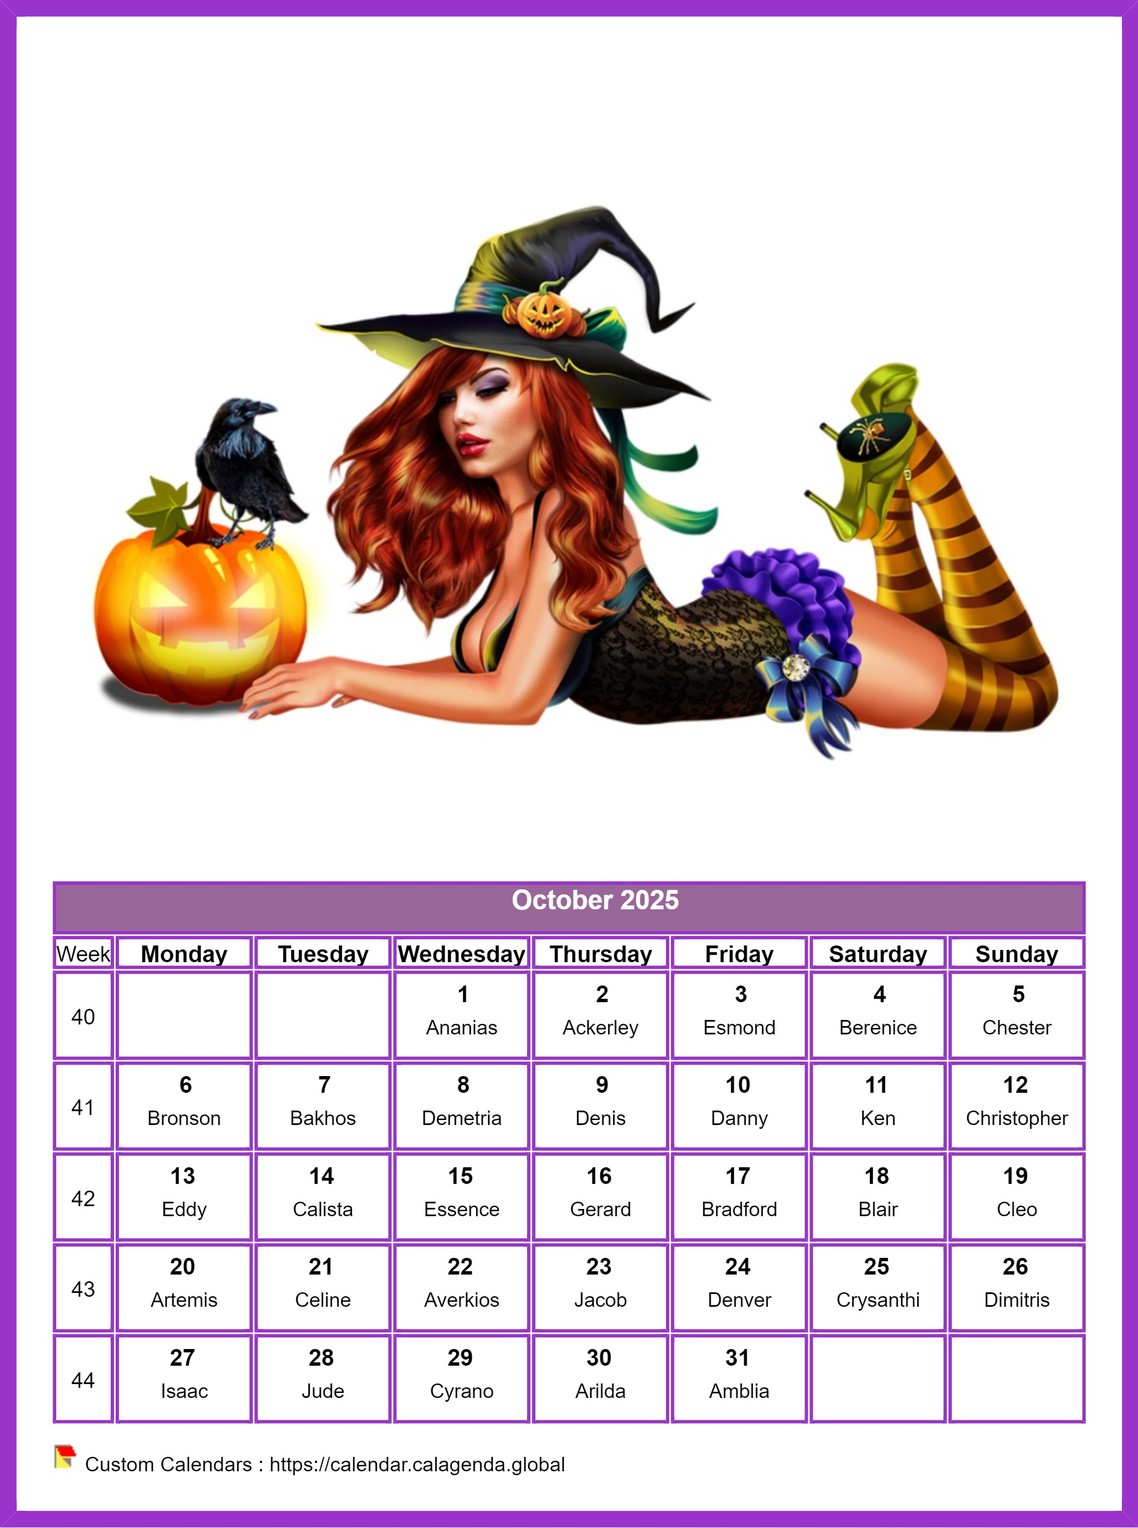 Calendar October 2025 women